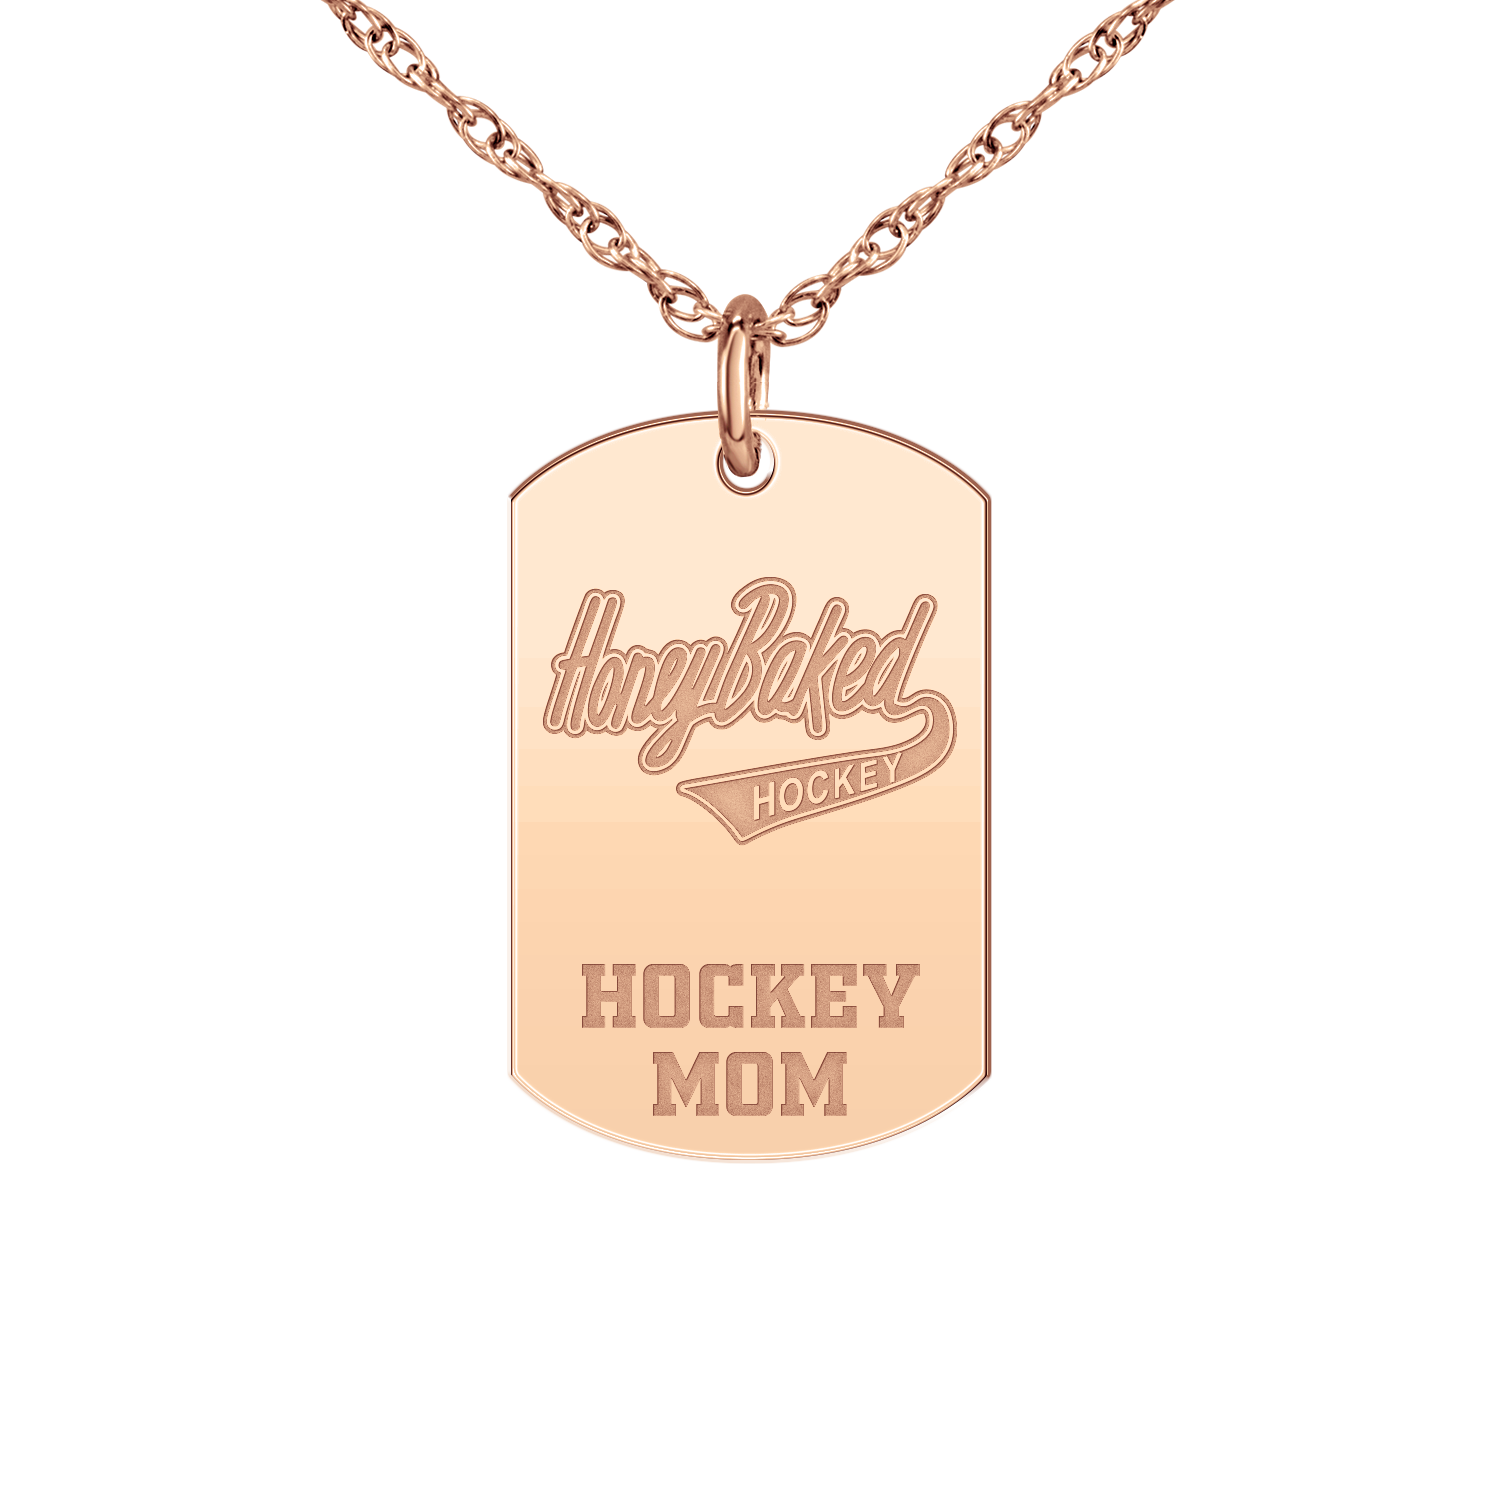 Honey Baked Hockey Hockey Mom Tag